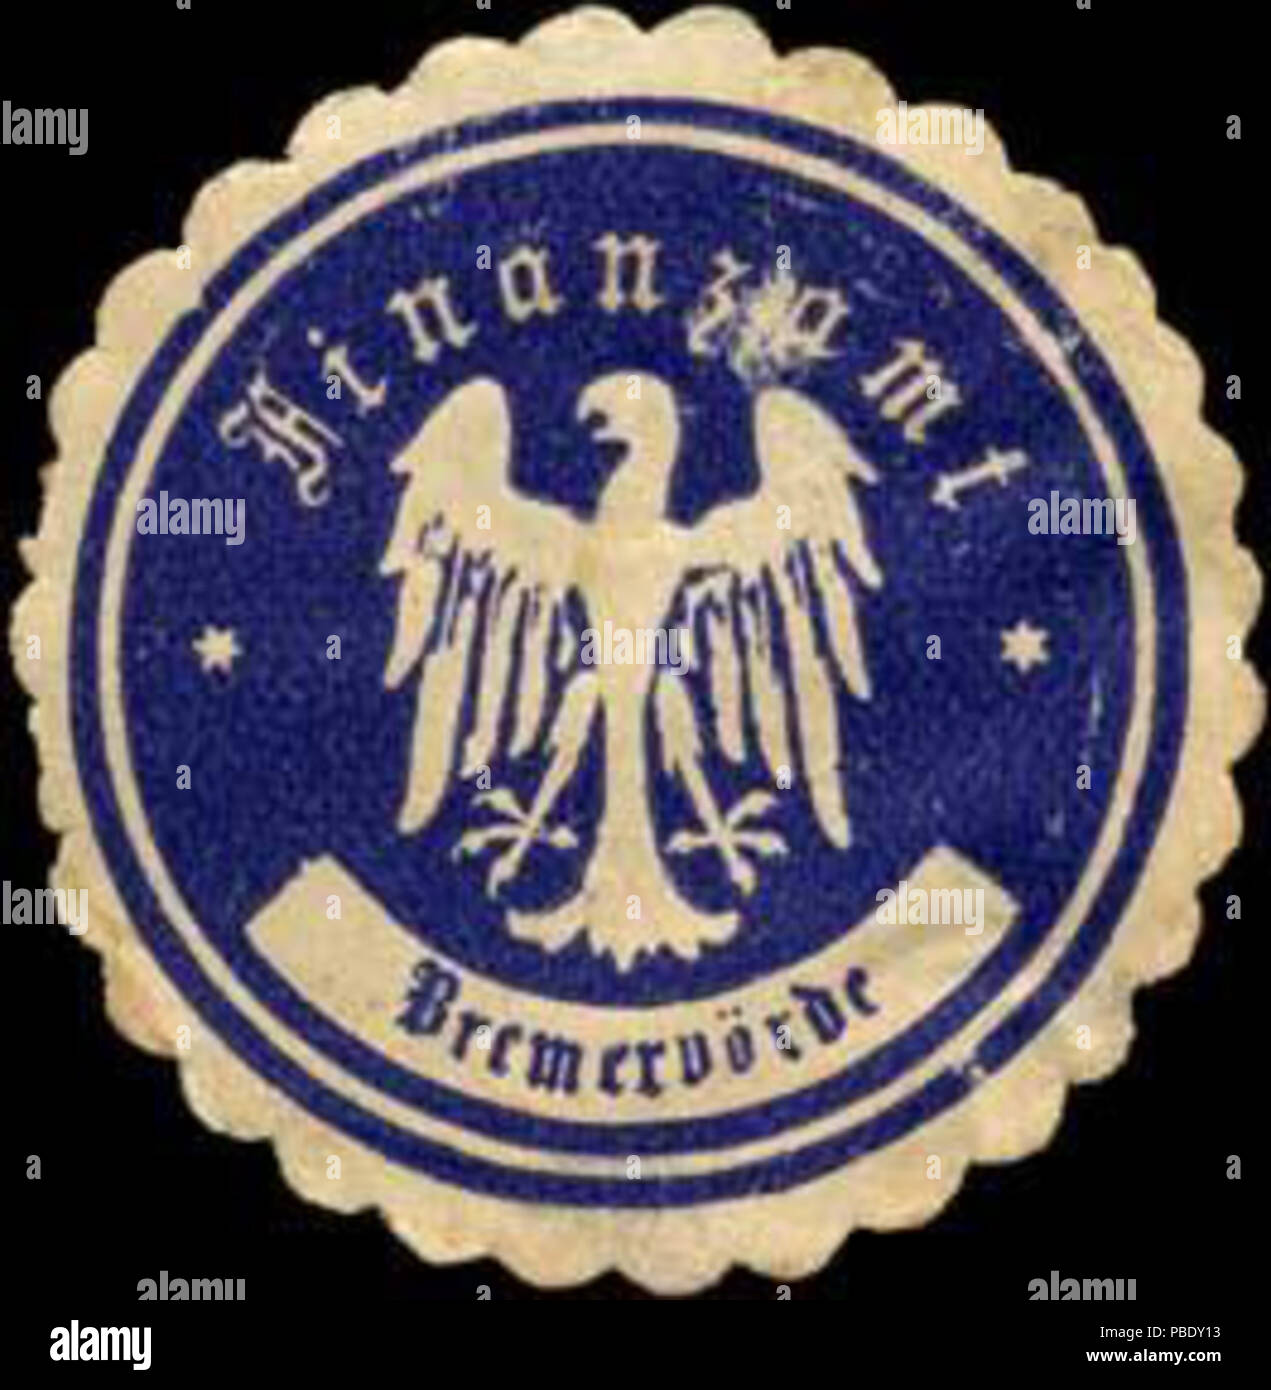 Alte Briefverschlussmarke aus Papier, welche seit ca. 1850 von Behoerden, Anwaelten, Notaren und Firmen zum verschliessen der Post verwendet wurde. 1355 Siegelmarke Finanzamt Bremervörde W0310818 Stock Photo